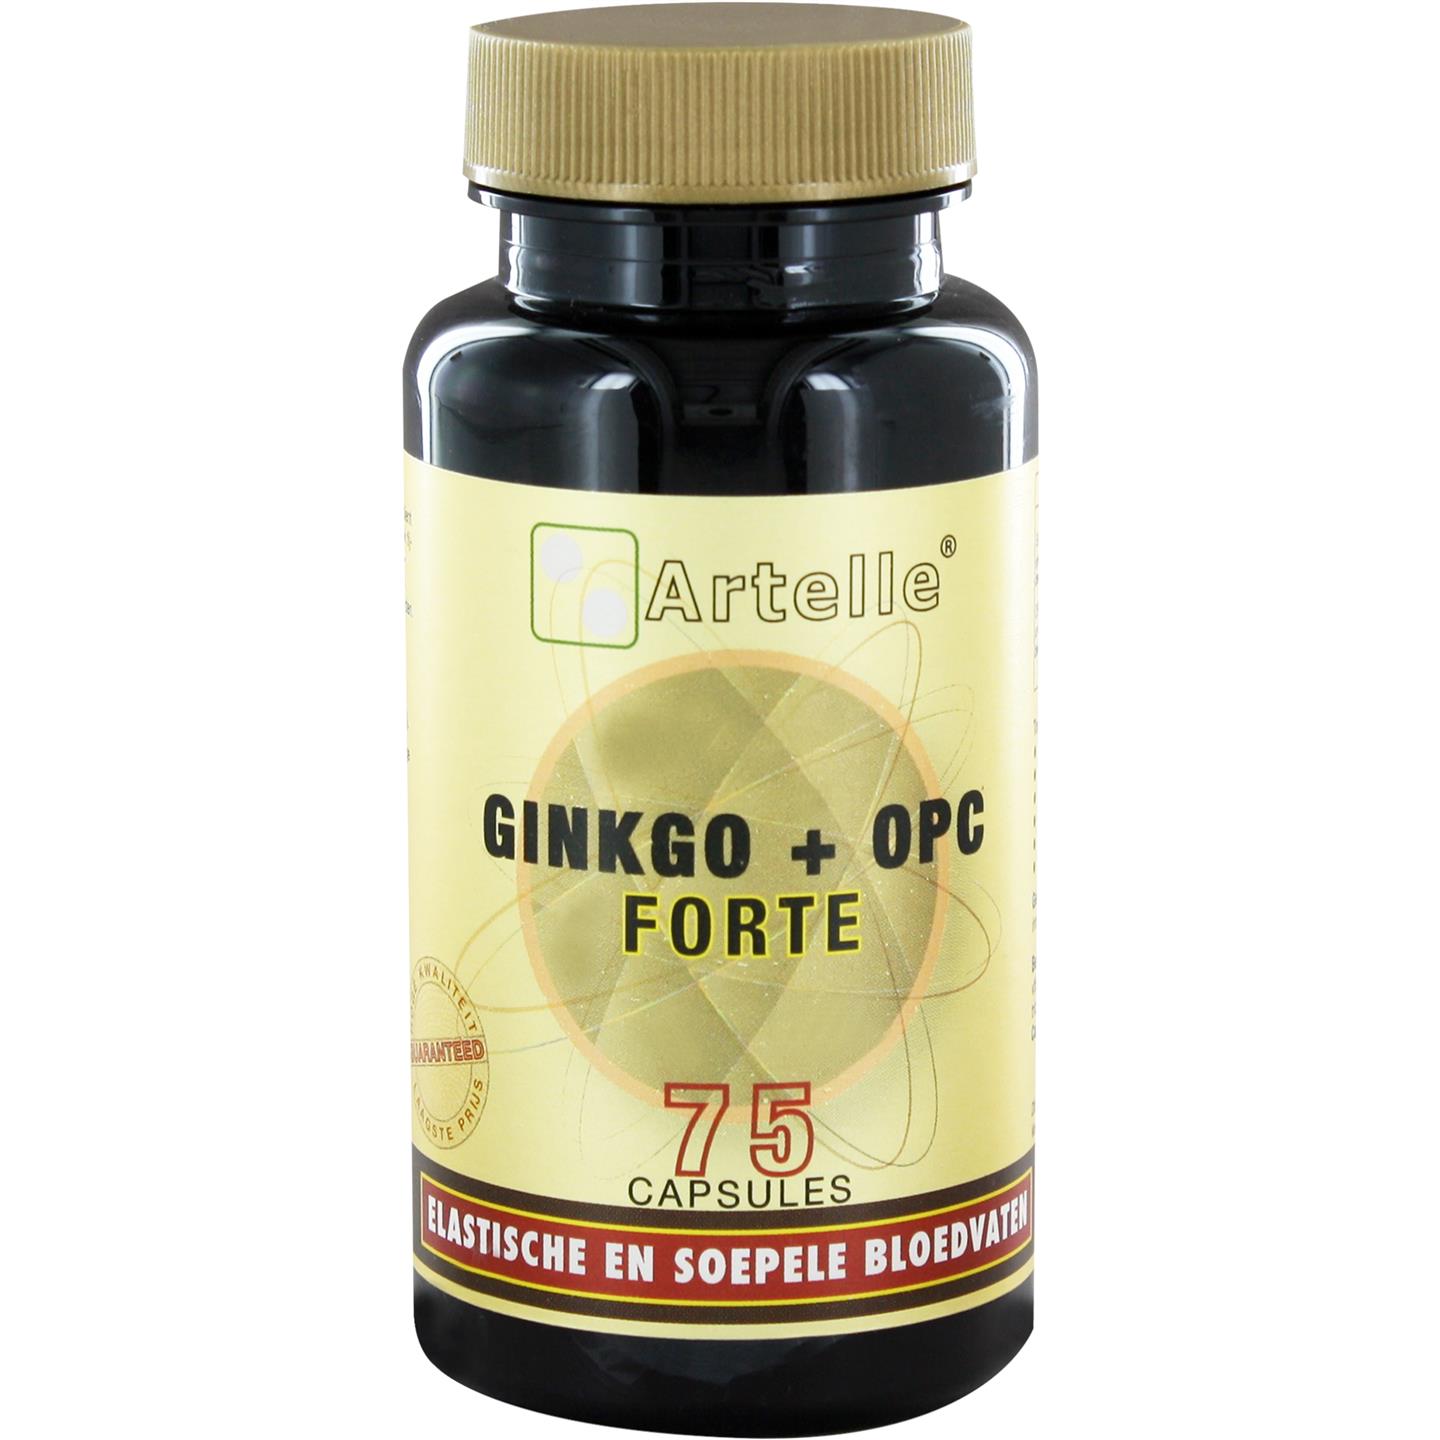 Artelle Ginkgo + Opc Forte 75caps